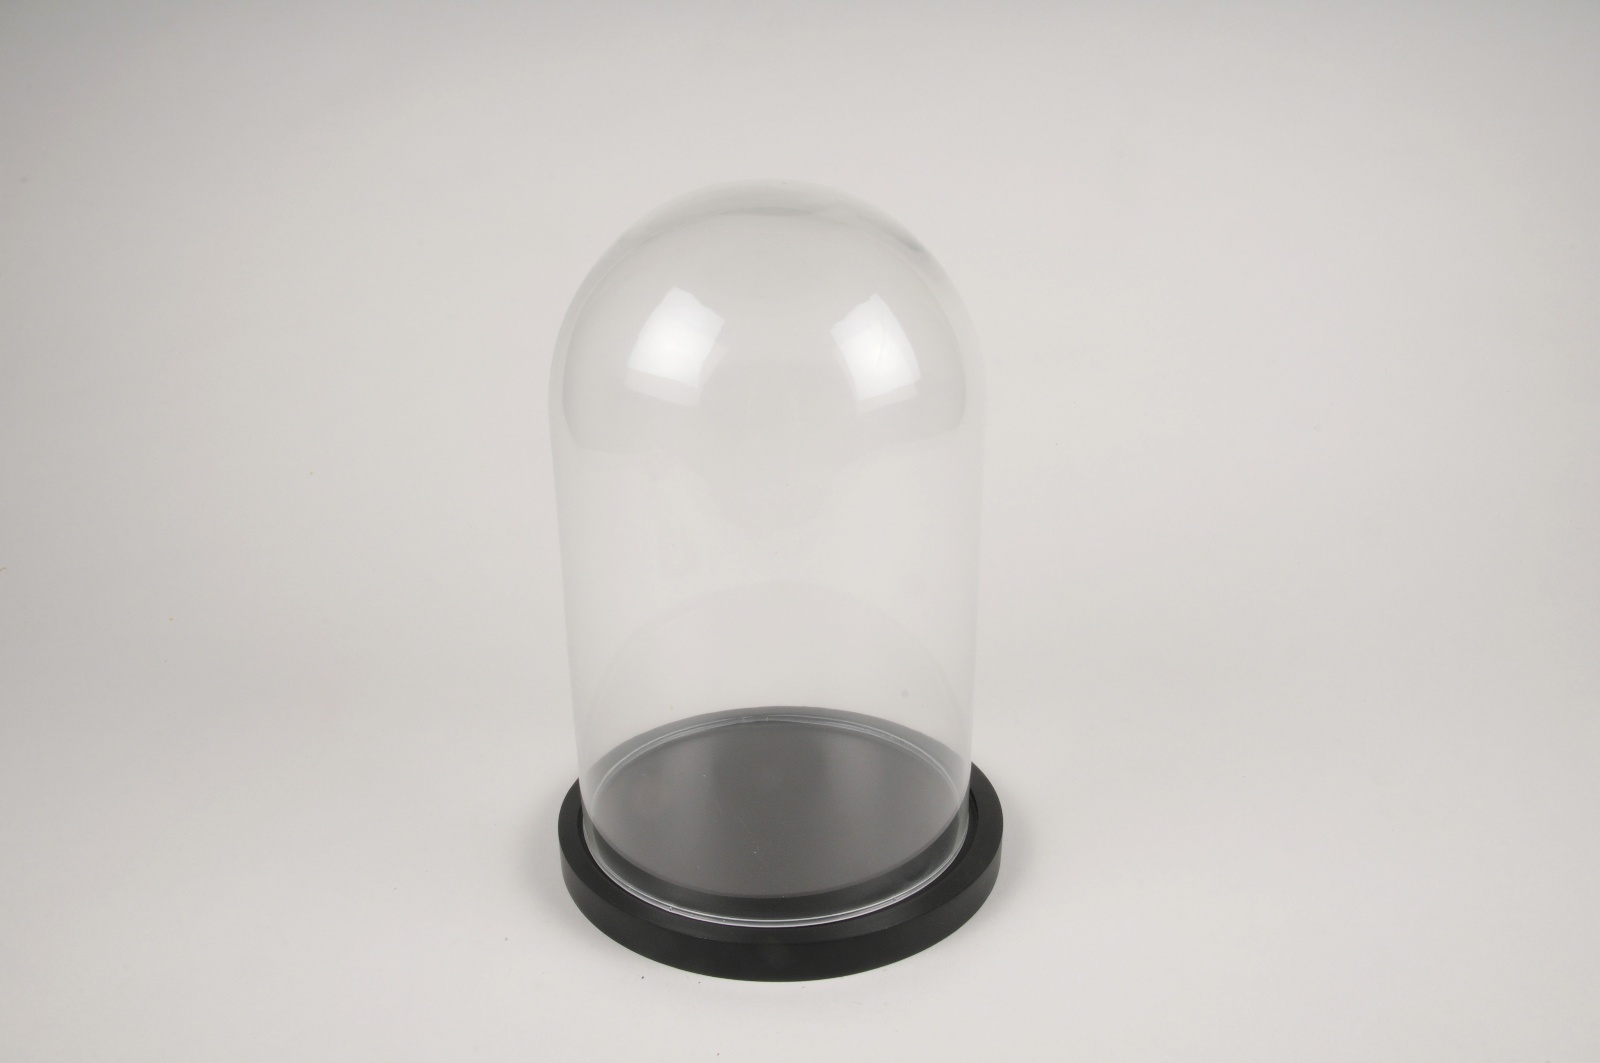 Cloche en verre avec plateau en bois, 15 cm de diamètre, Verre